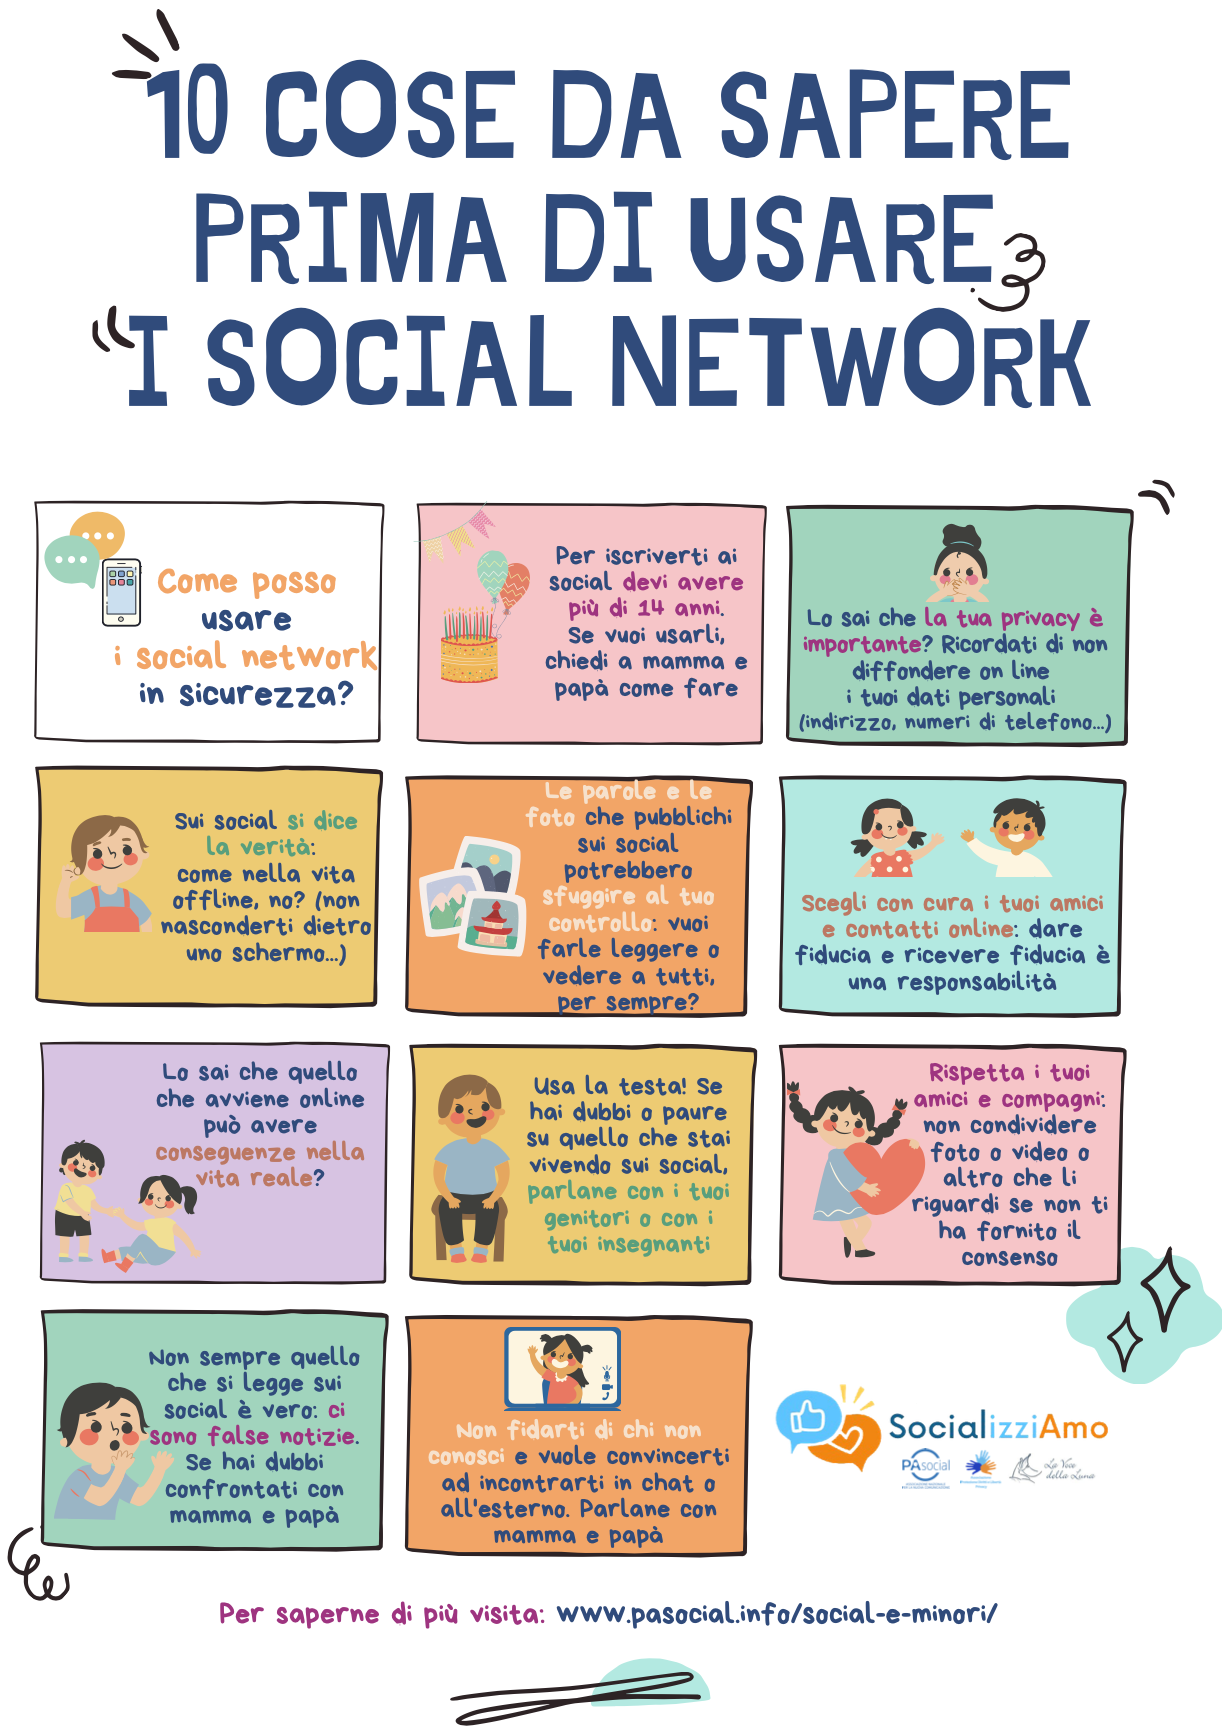 Social network e minori: presentato “SocializziAmo”